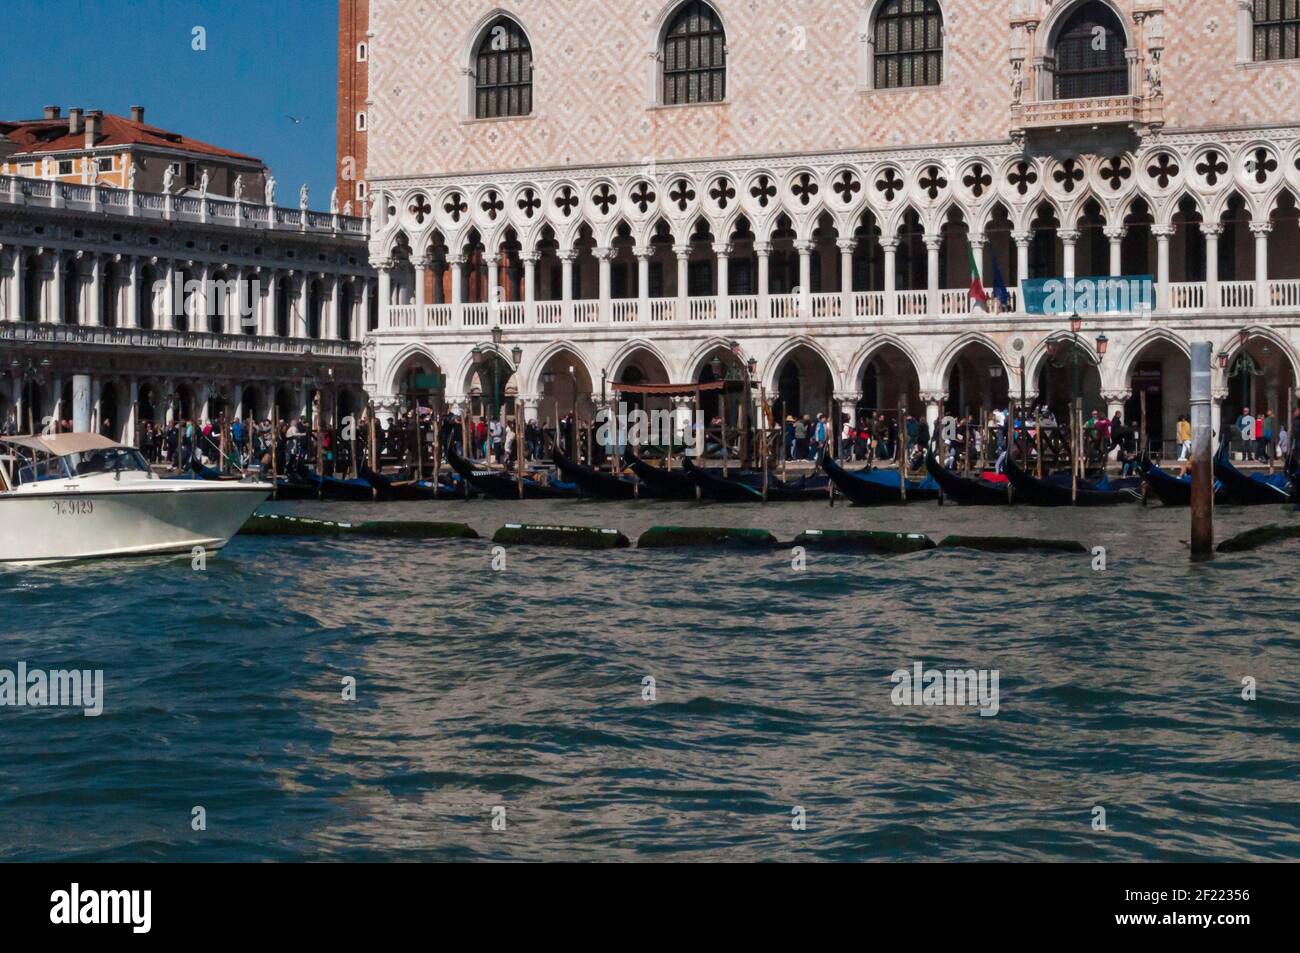 Vista detallada del Palacio Ducal de Venecia. Parte de la Torre Markus se puede ver en el fondo. A la izquierda está parte de la Biblioteca Marciana Foto de stock